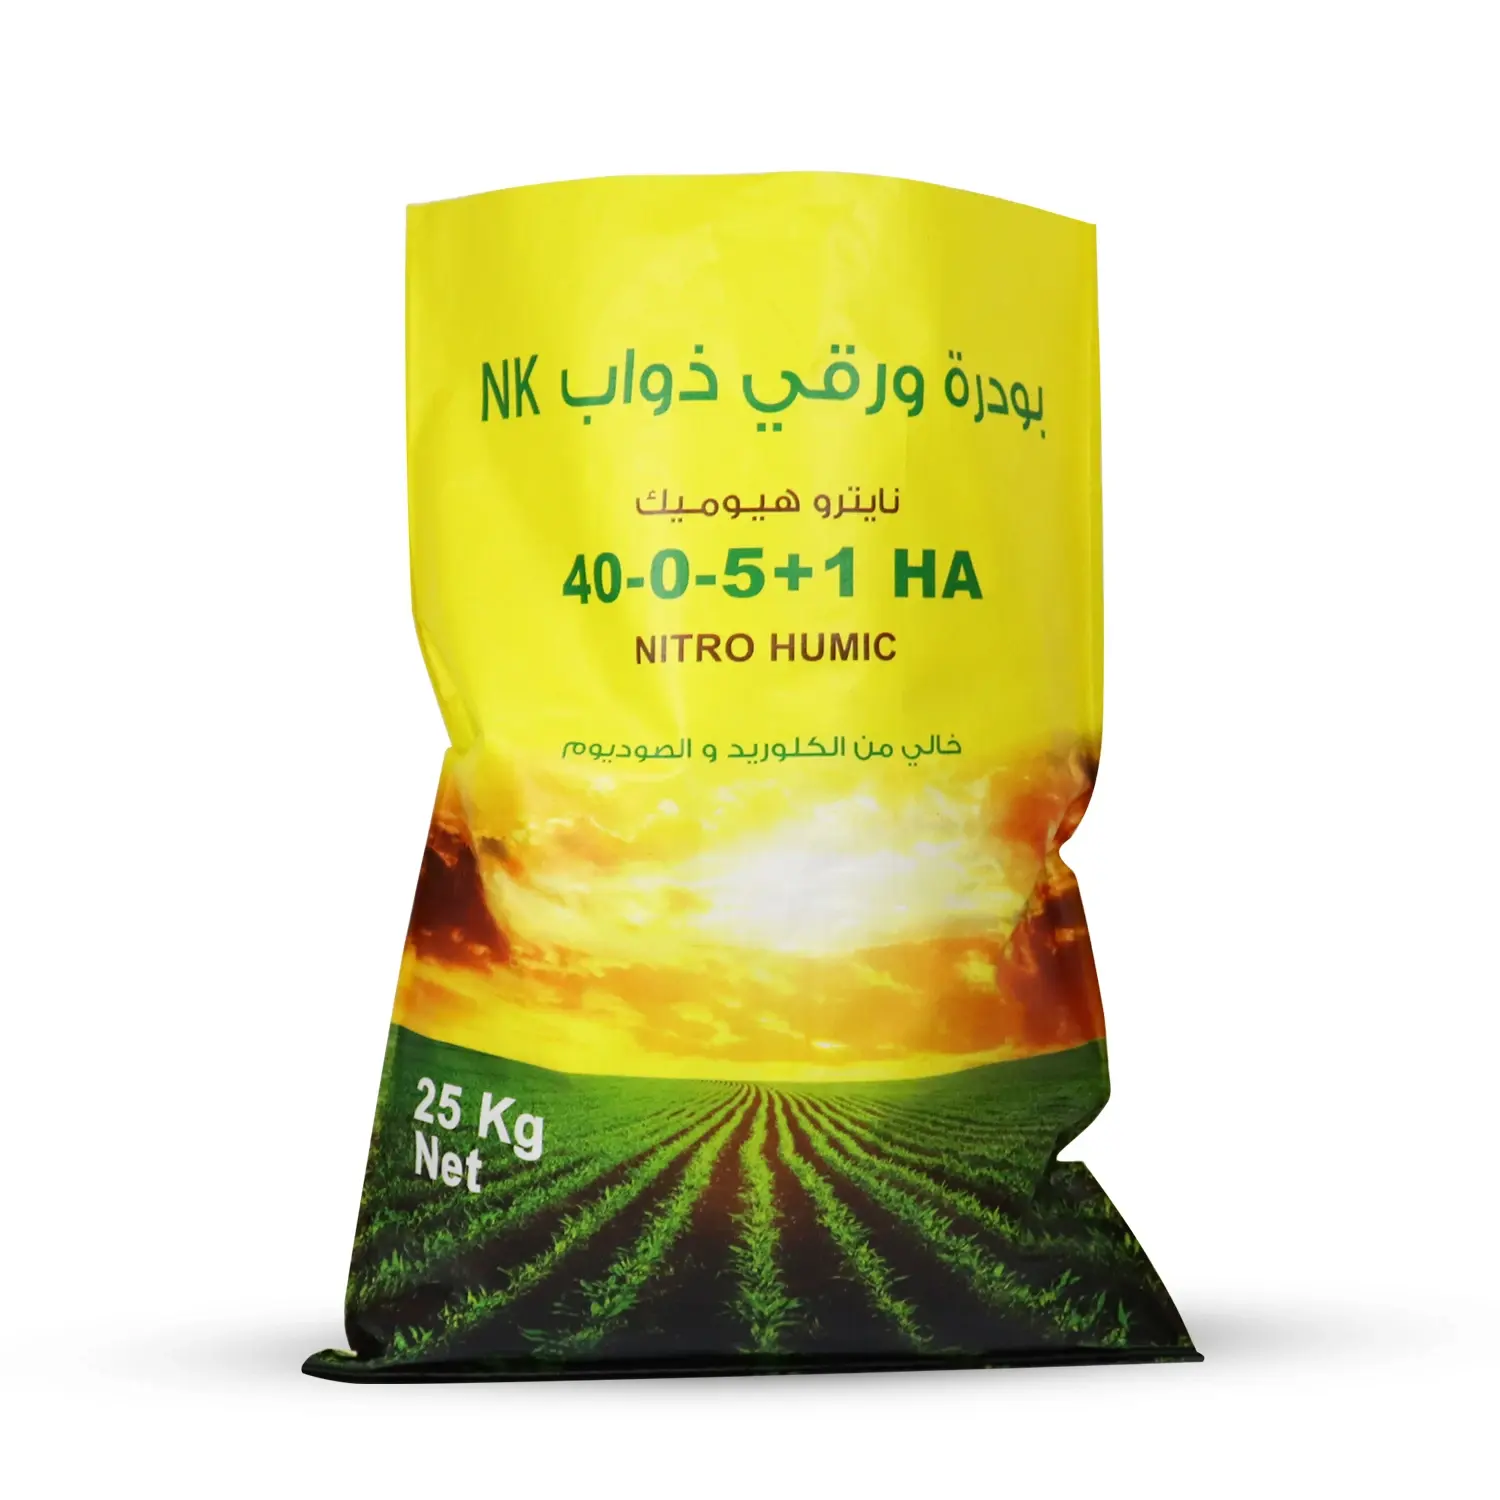 Sıcak satış yüksek kalite özel pp dokuma plastik güçlü ambalaj çanta pirinç buğday mahsul ambalaj için